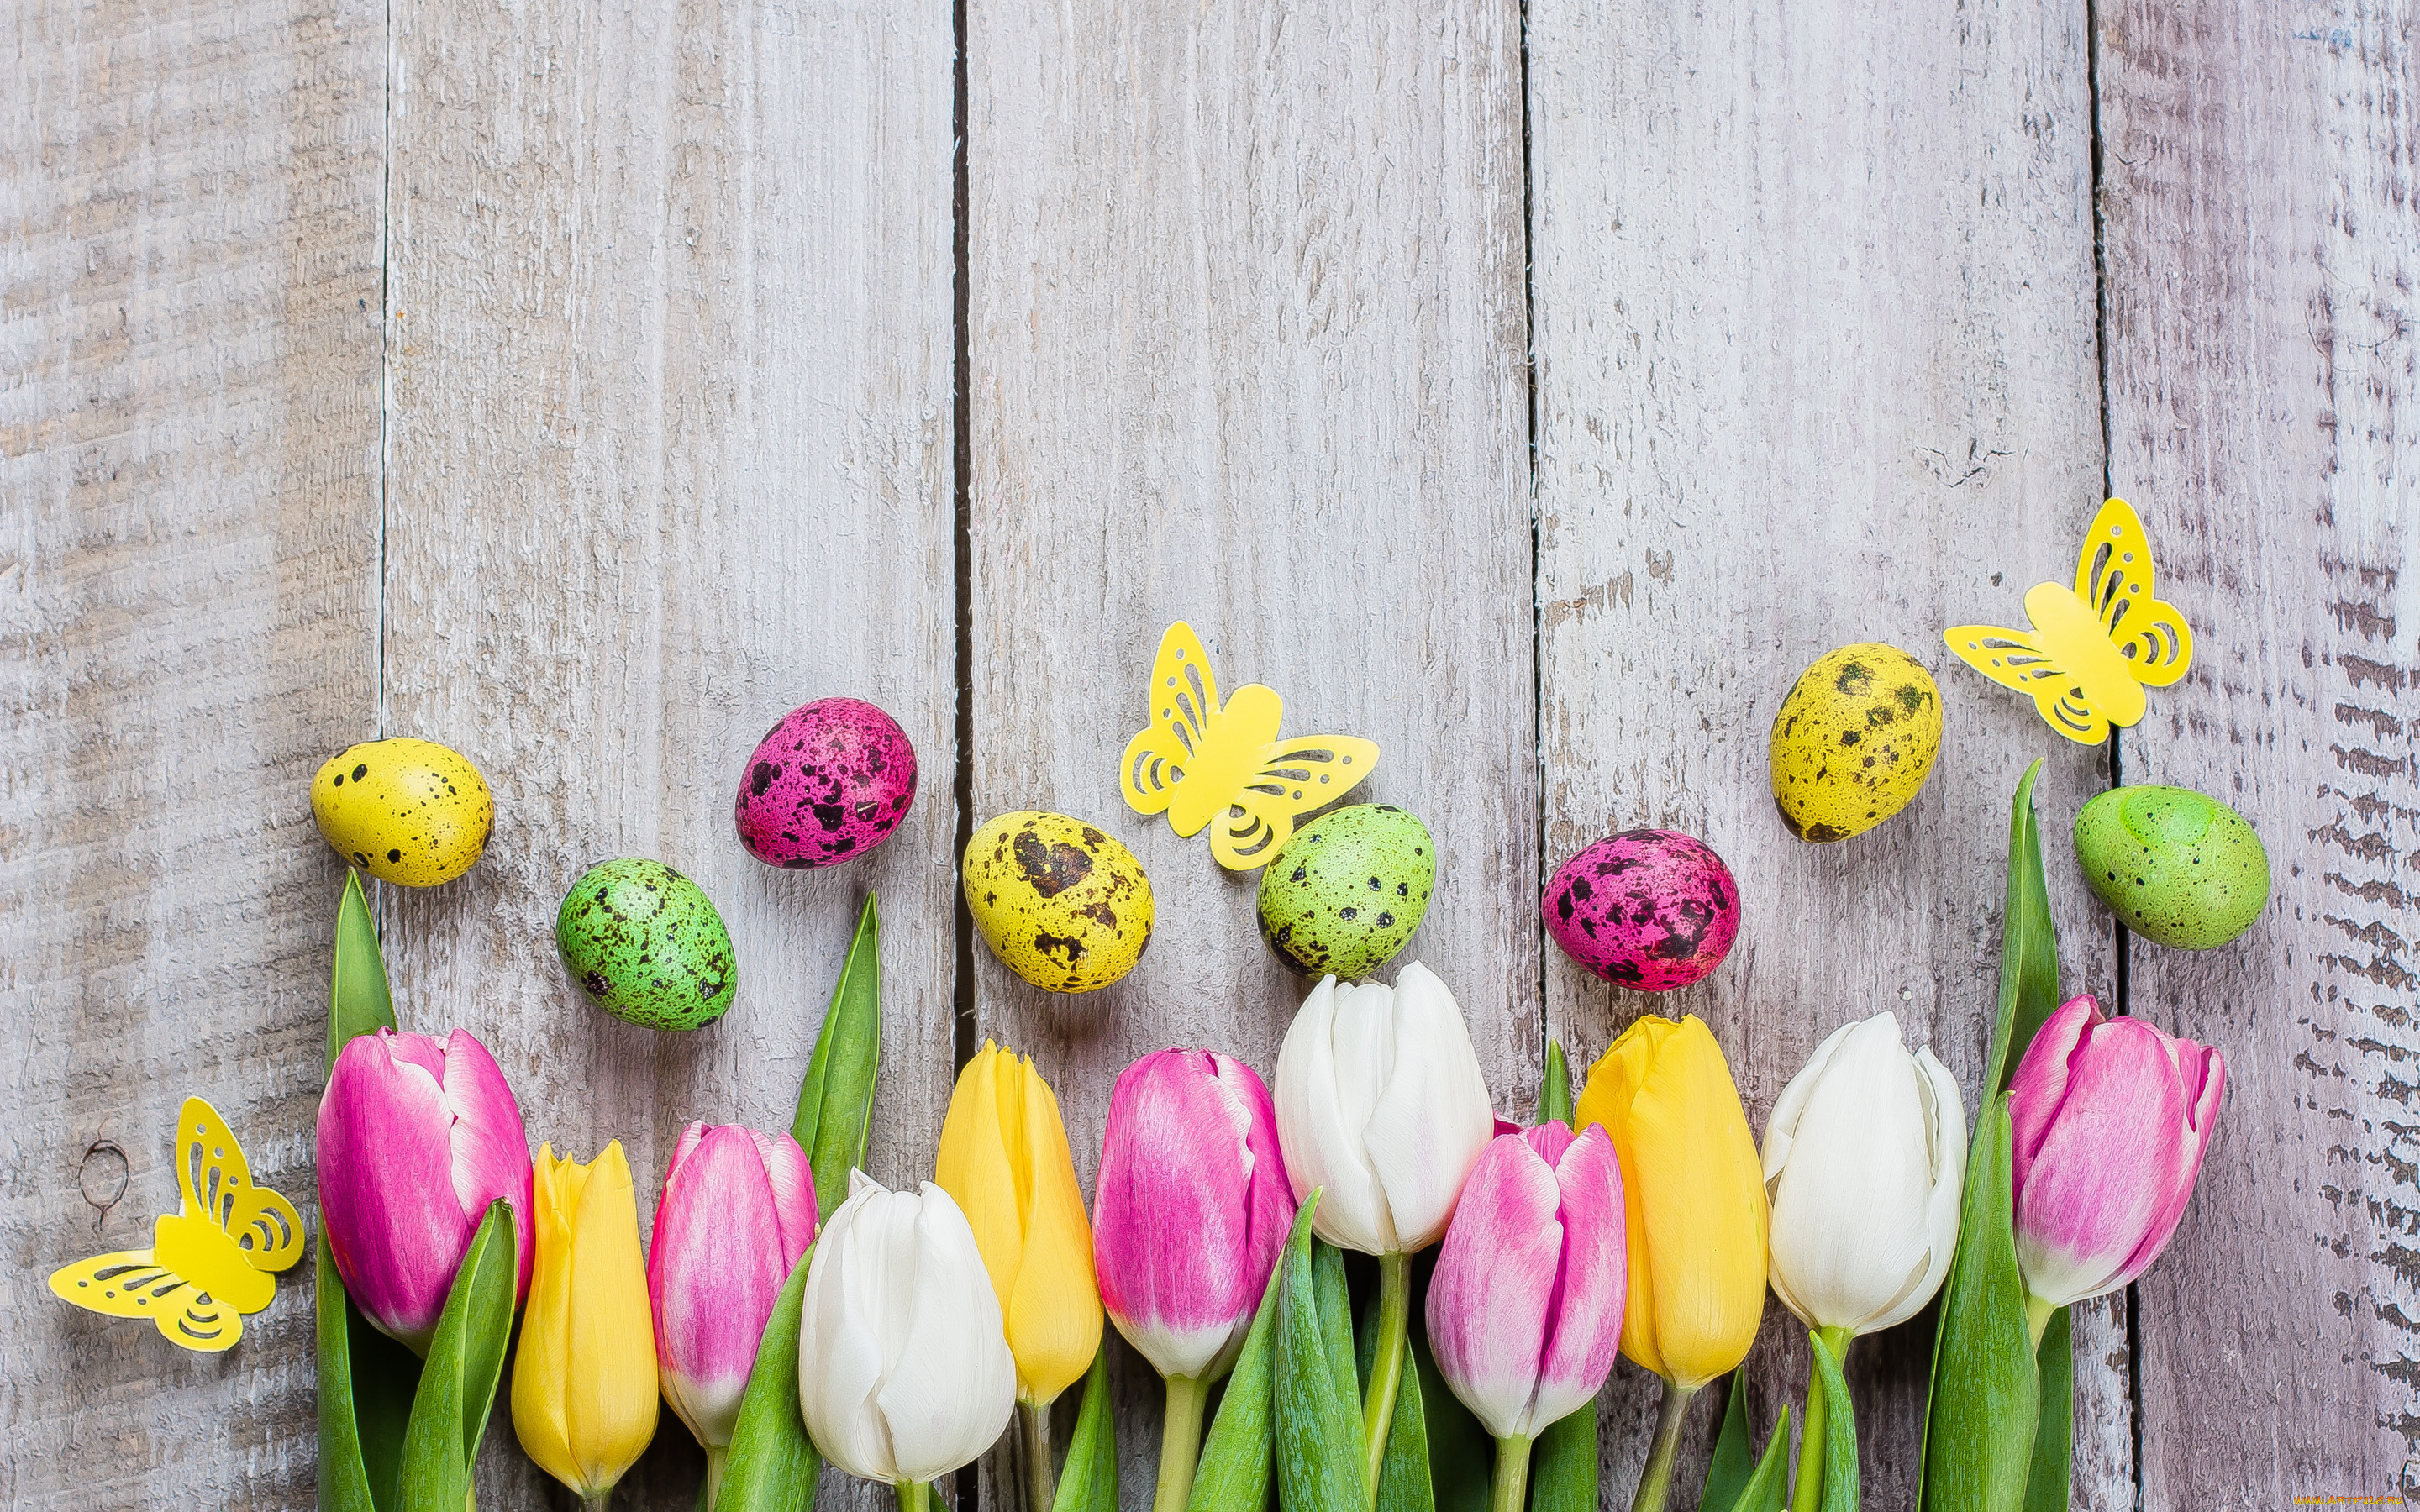 праздничные, пасха, цветы, яйца, colorful, тюльпаны, happy, pink, flowers, tulips, easter, eggs